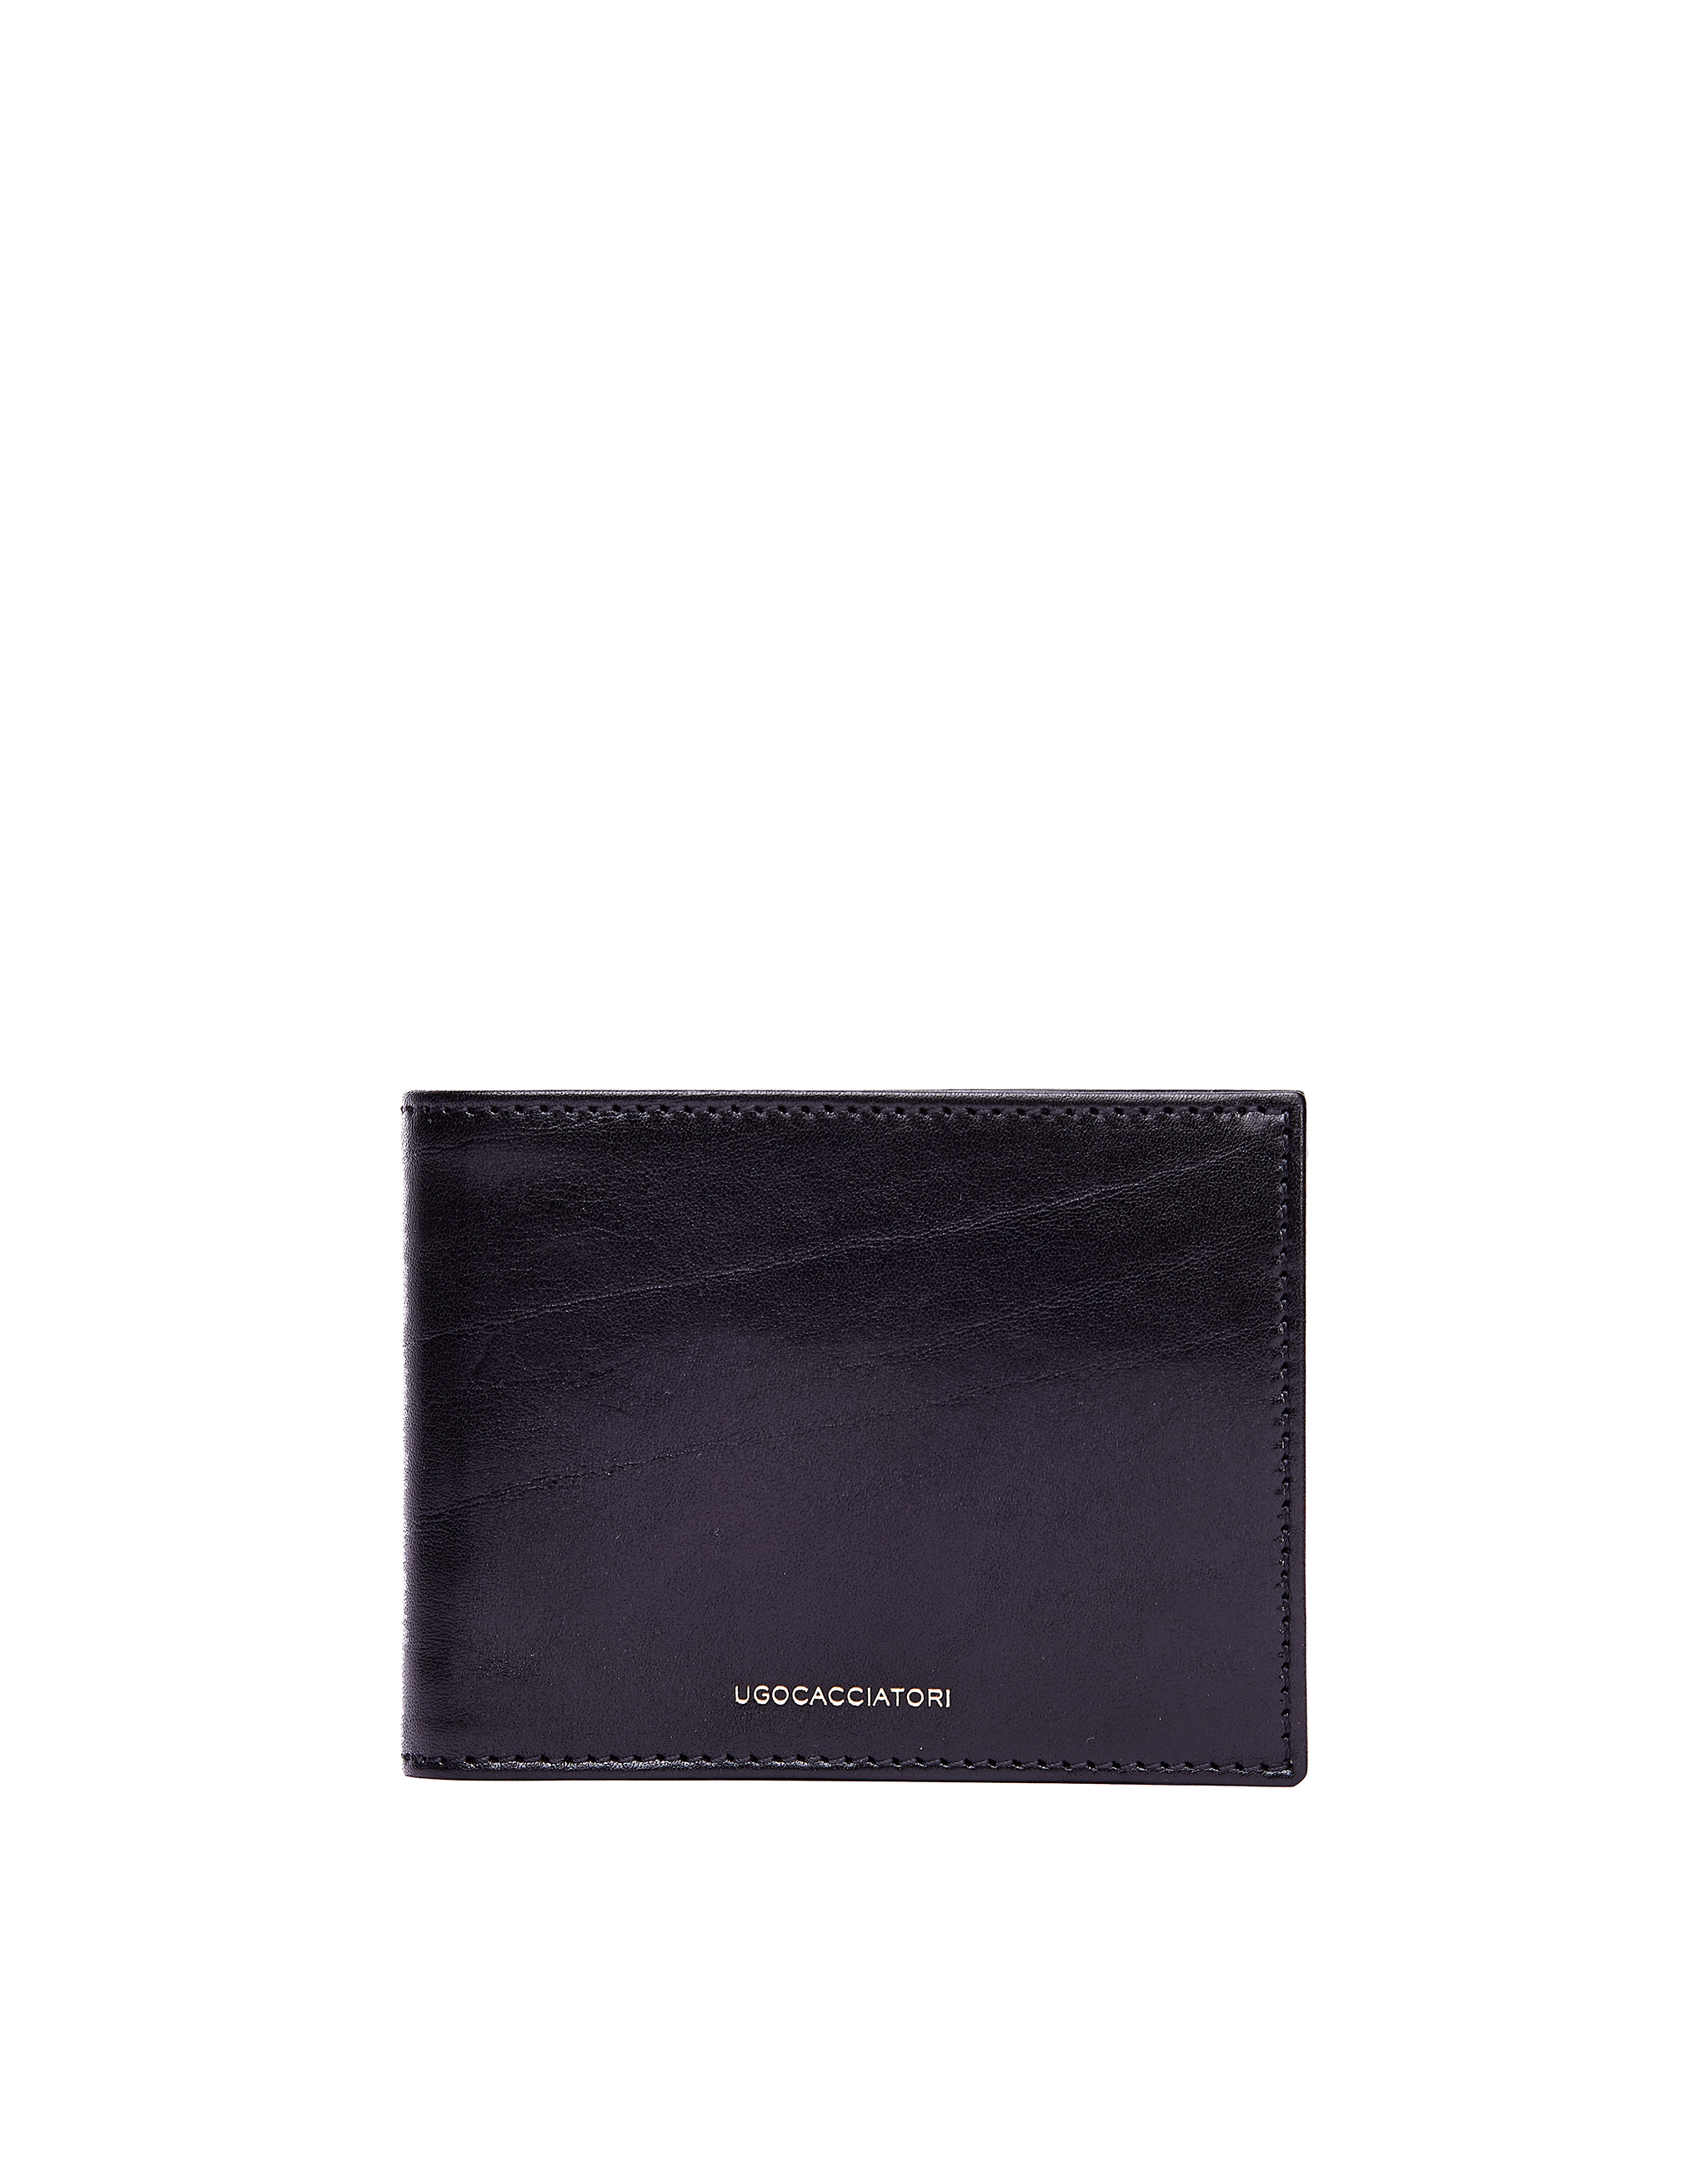 Черный кожаный кошелек Pocket Ugo Cacciatori WL141/VGN, размер One Size WL141/VGN - фото 1